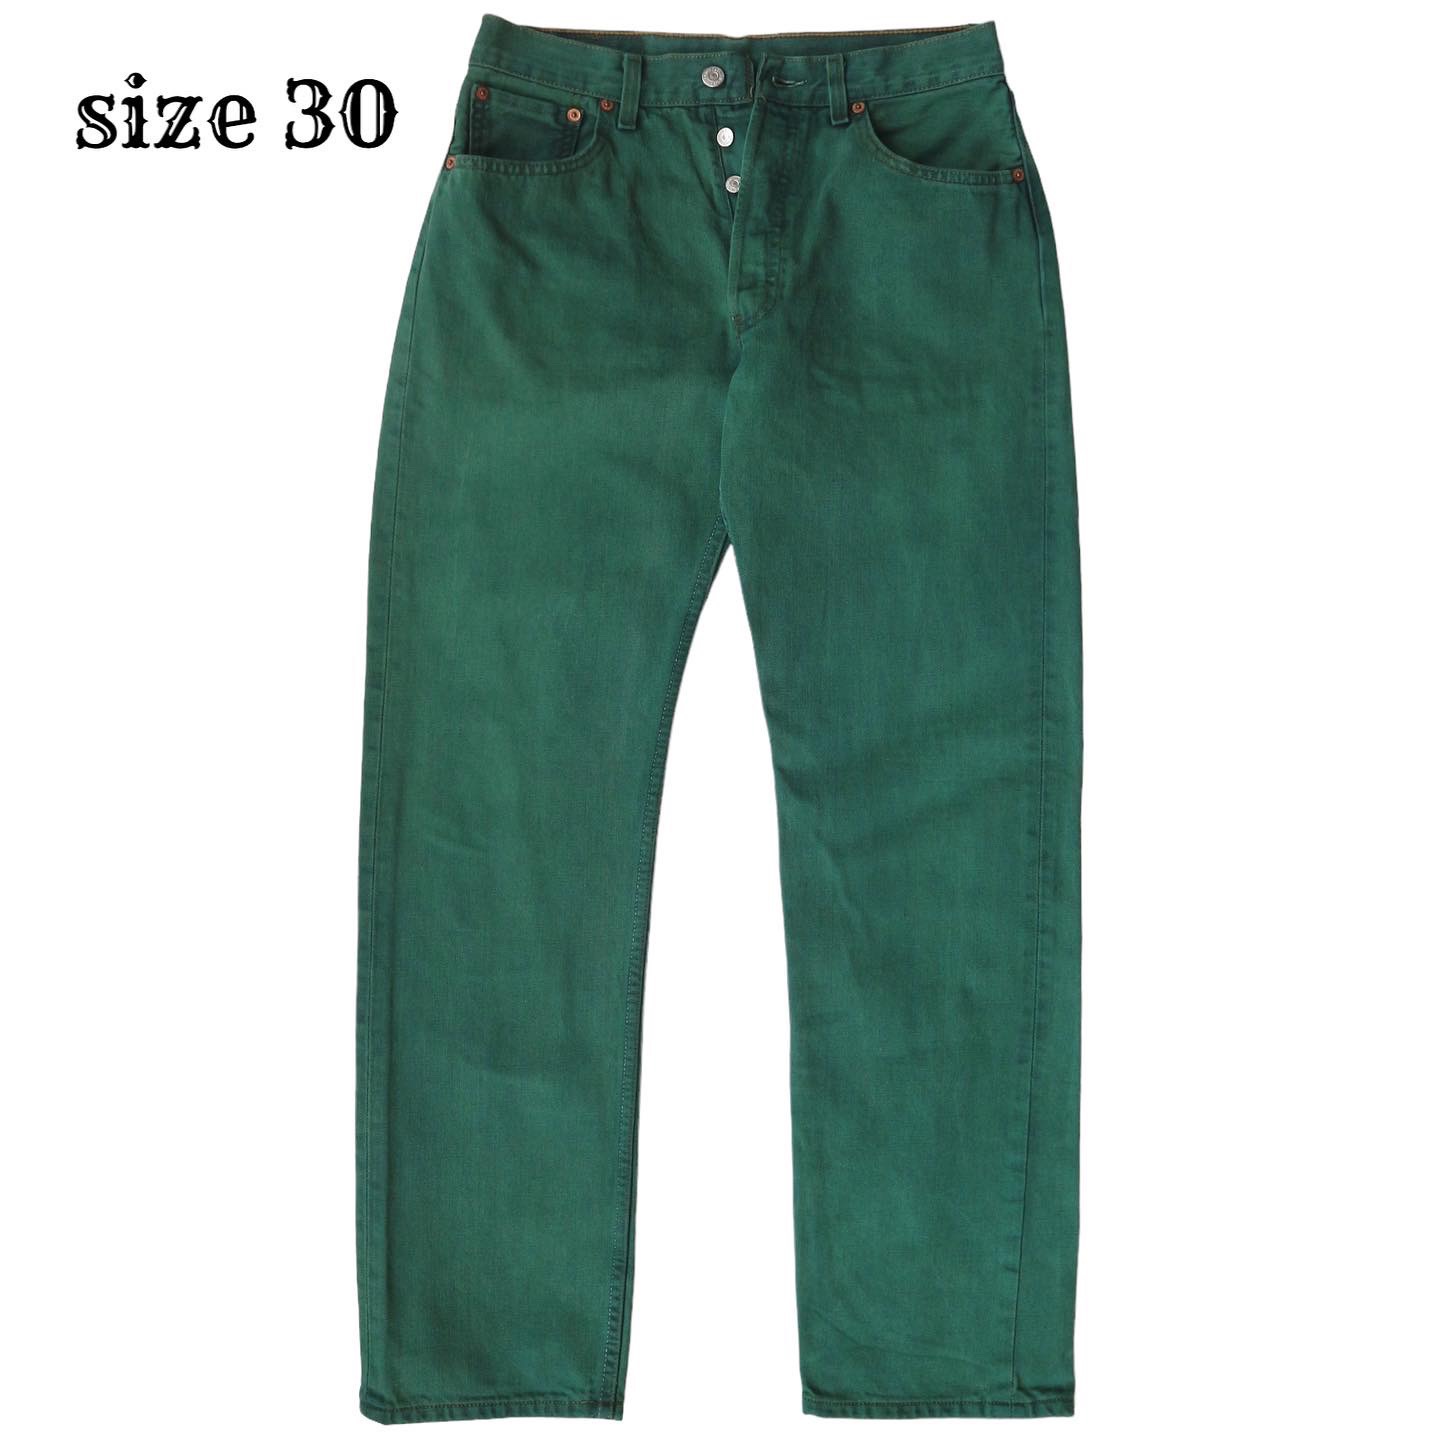 2000s Levi’s 501 Denim Jeans Size 30